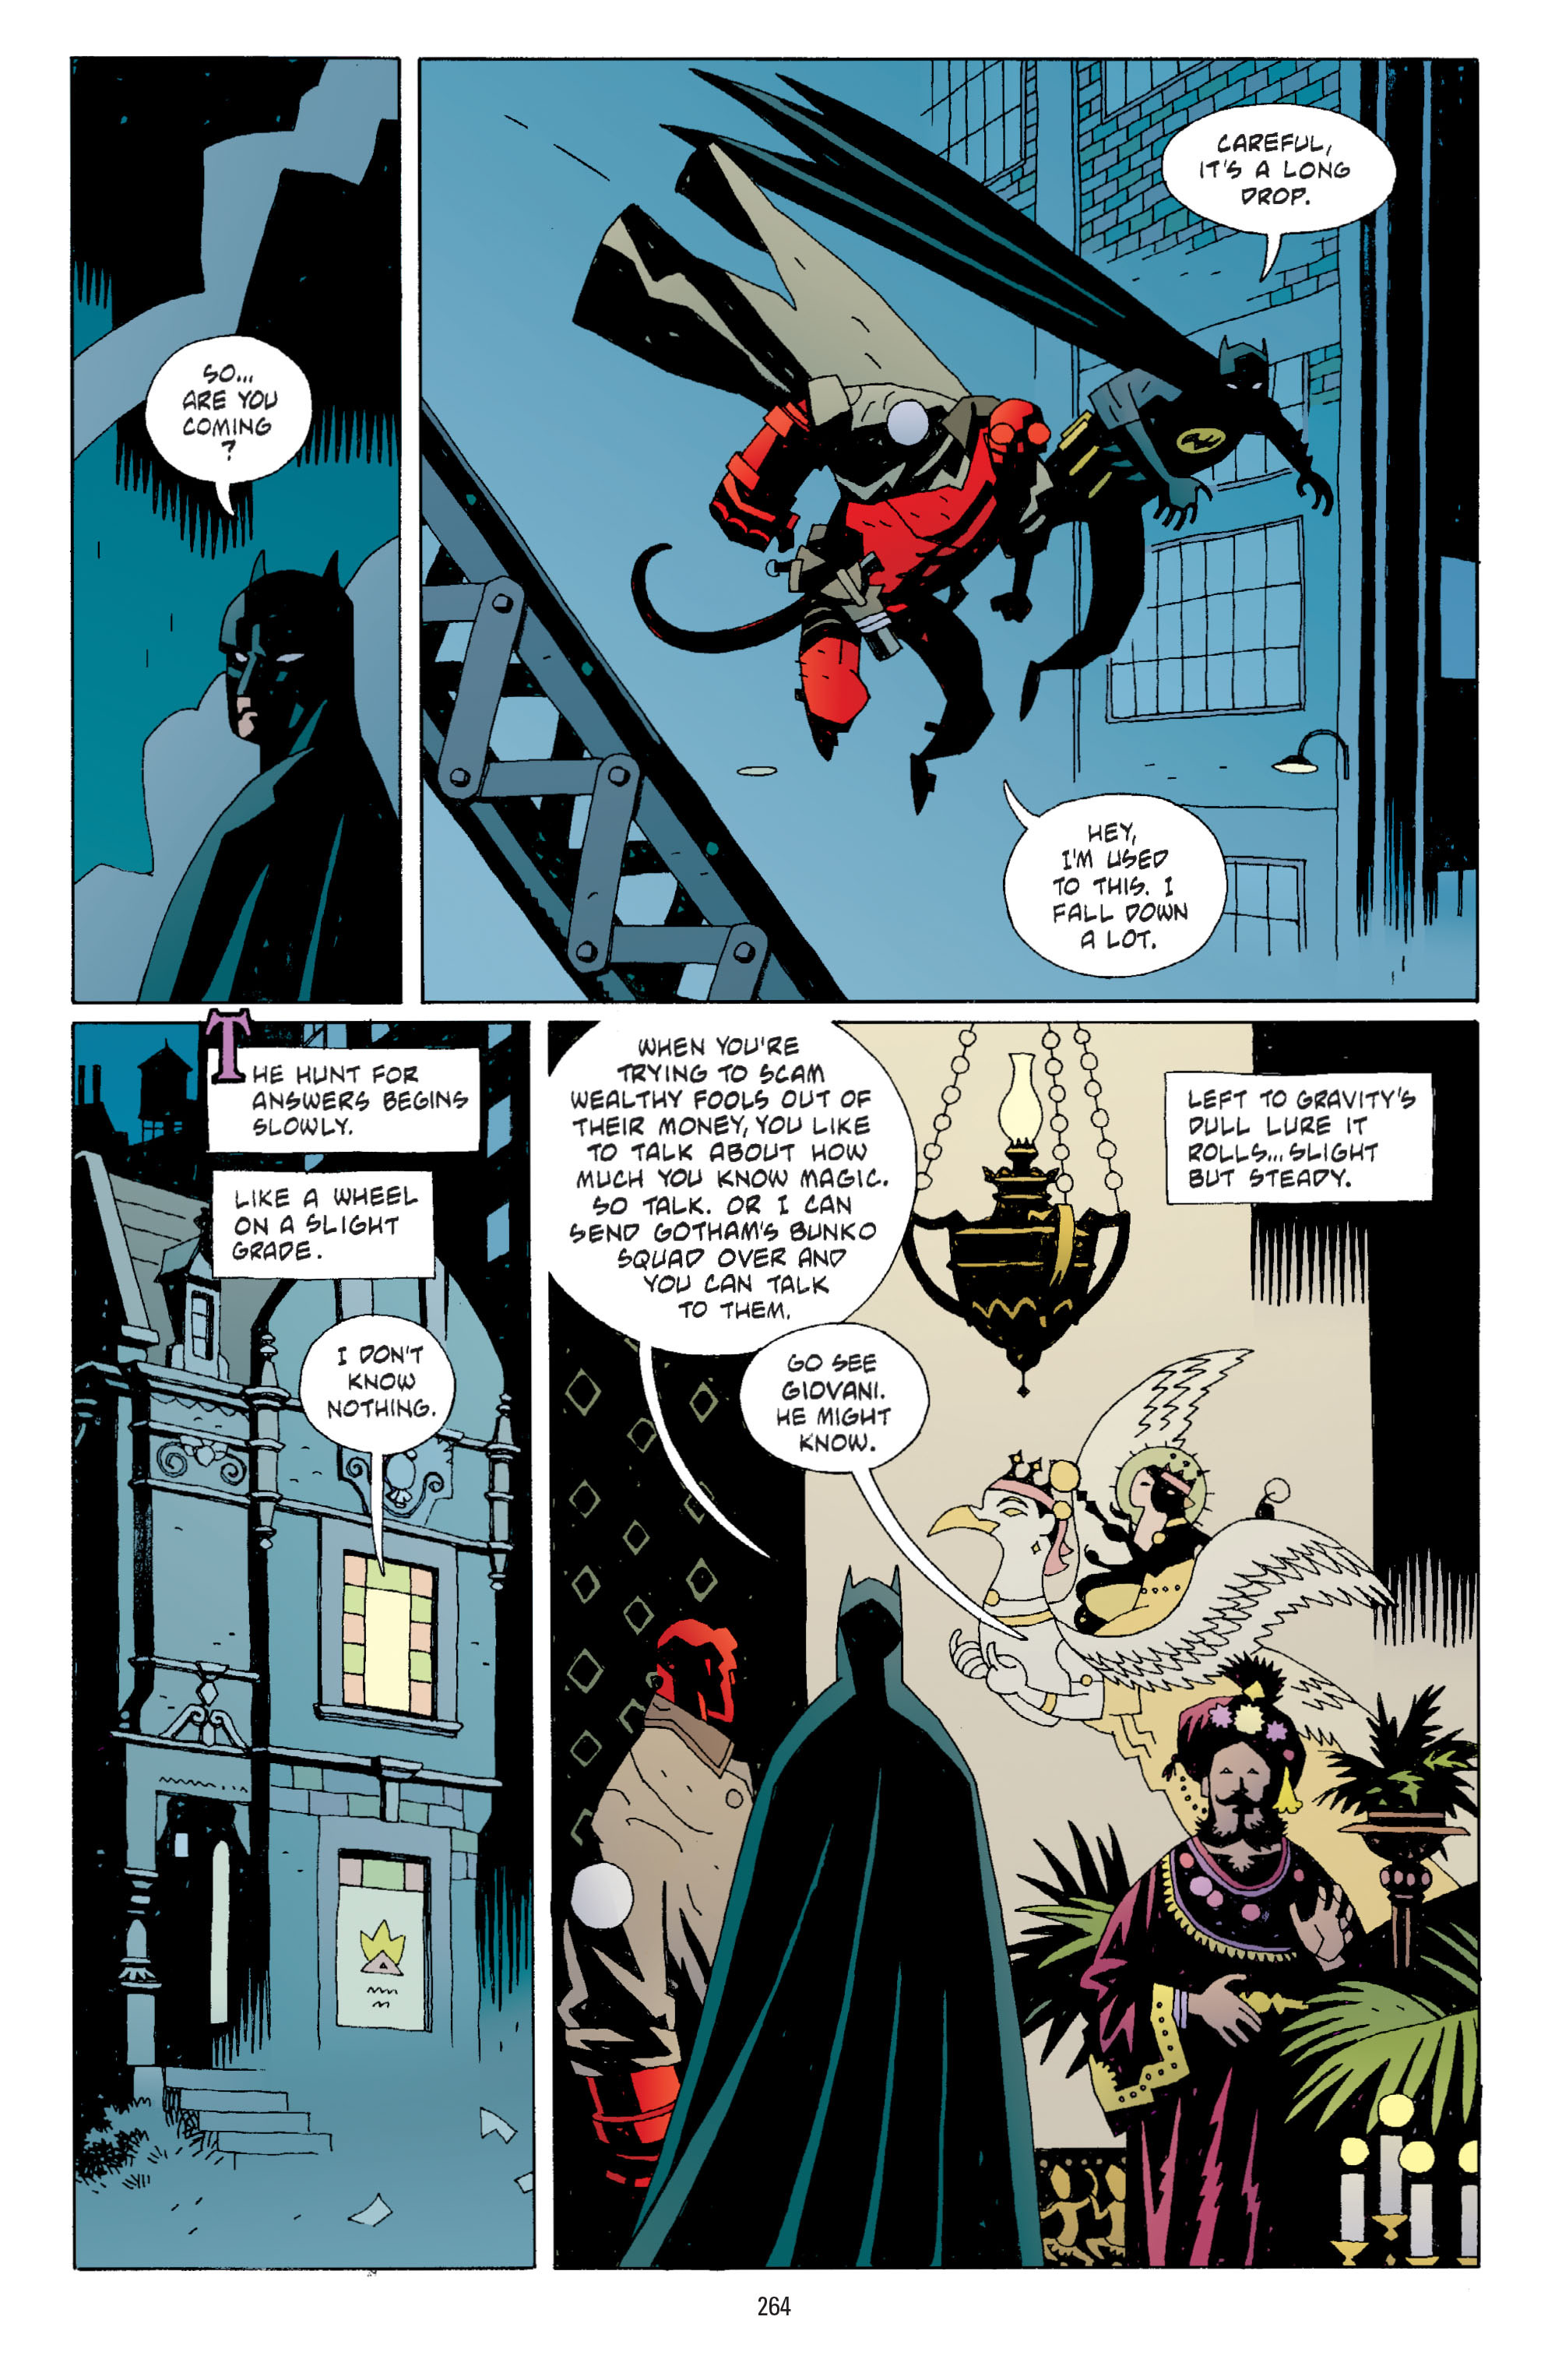 DC Comics/Dark Horse Comics: Justice League Full #1 - English 255